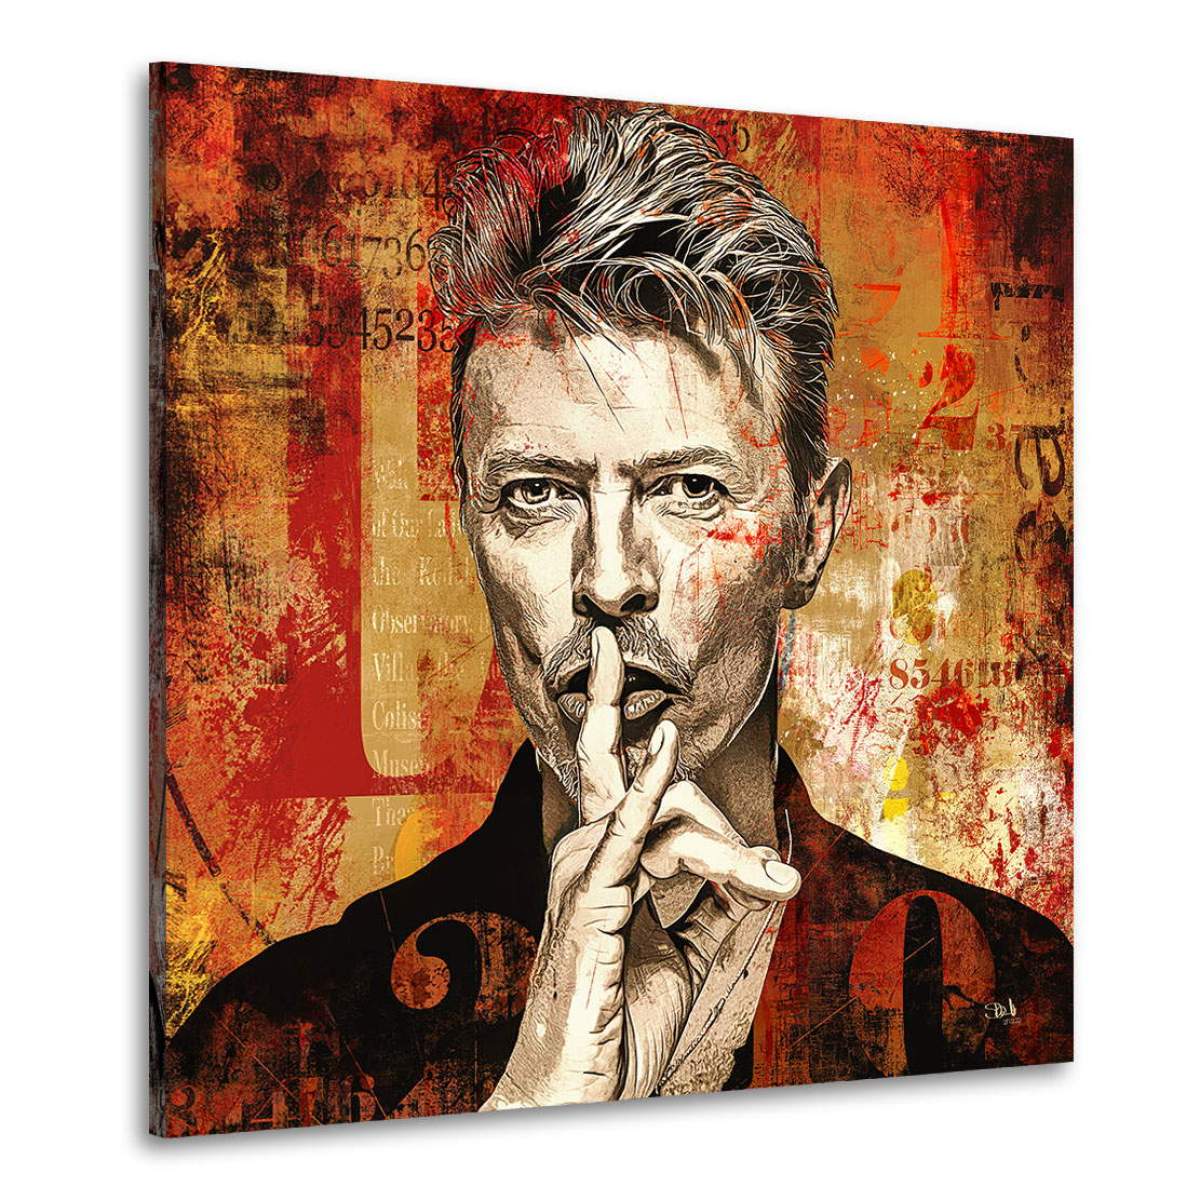 David Bowie Wandbild von Kunstgestalten24